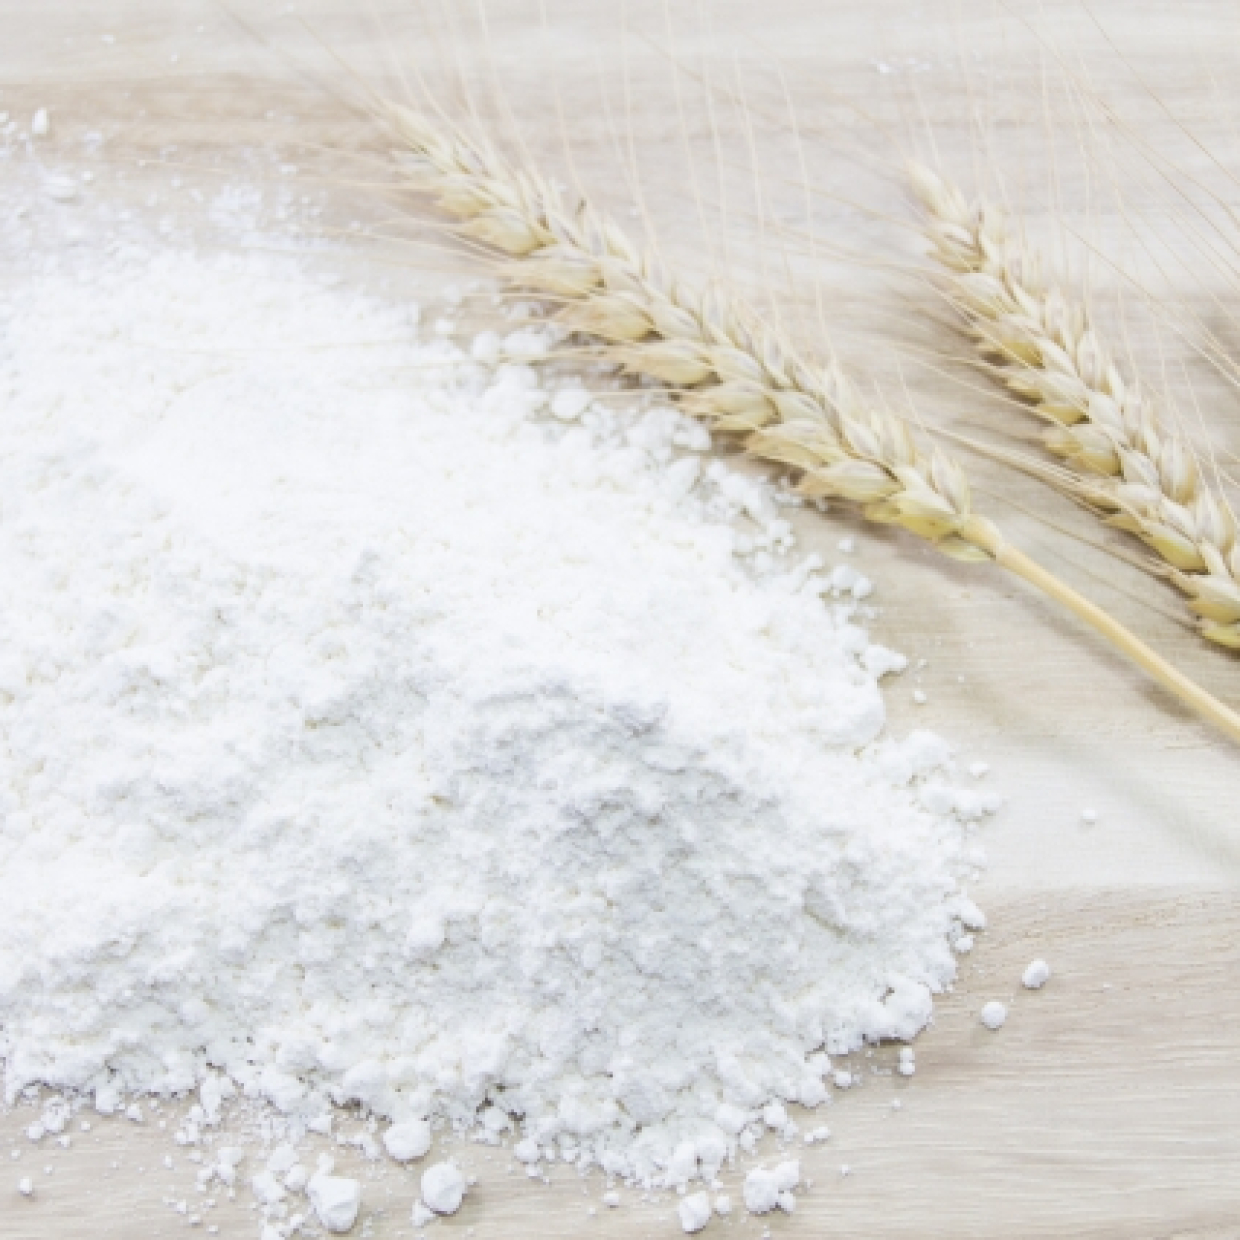  知って得する“小麦粉の賢い活用術” 